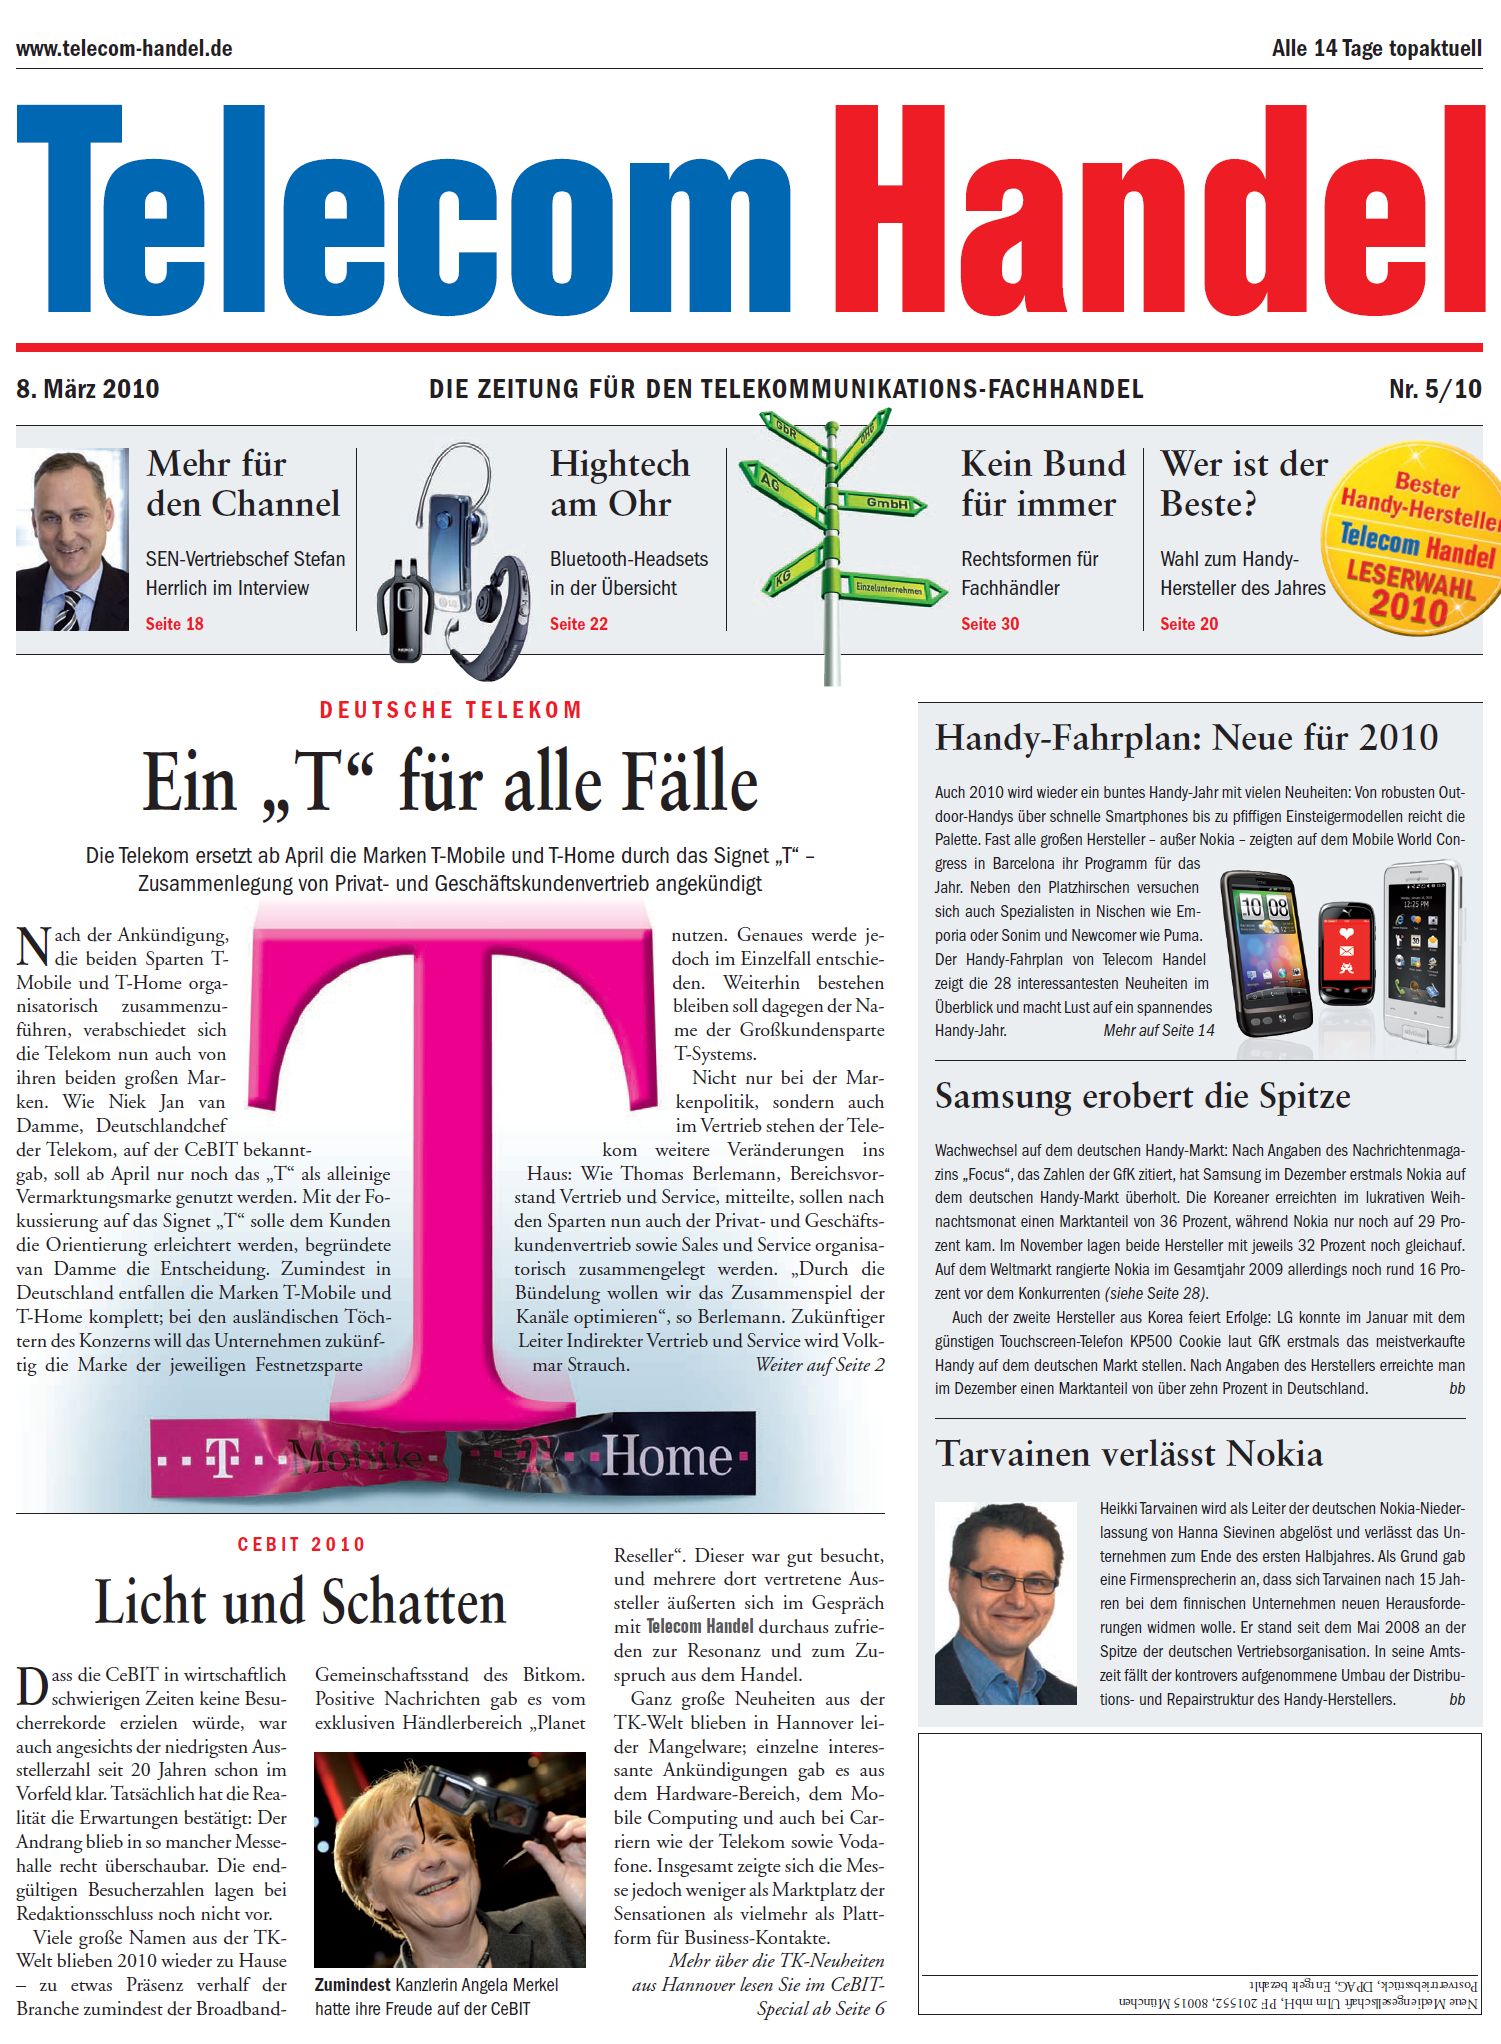 Telecom Handel Ausgabe 05/2010